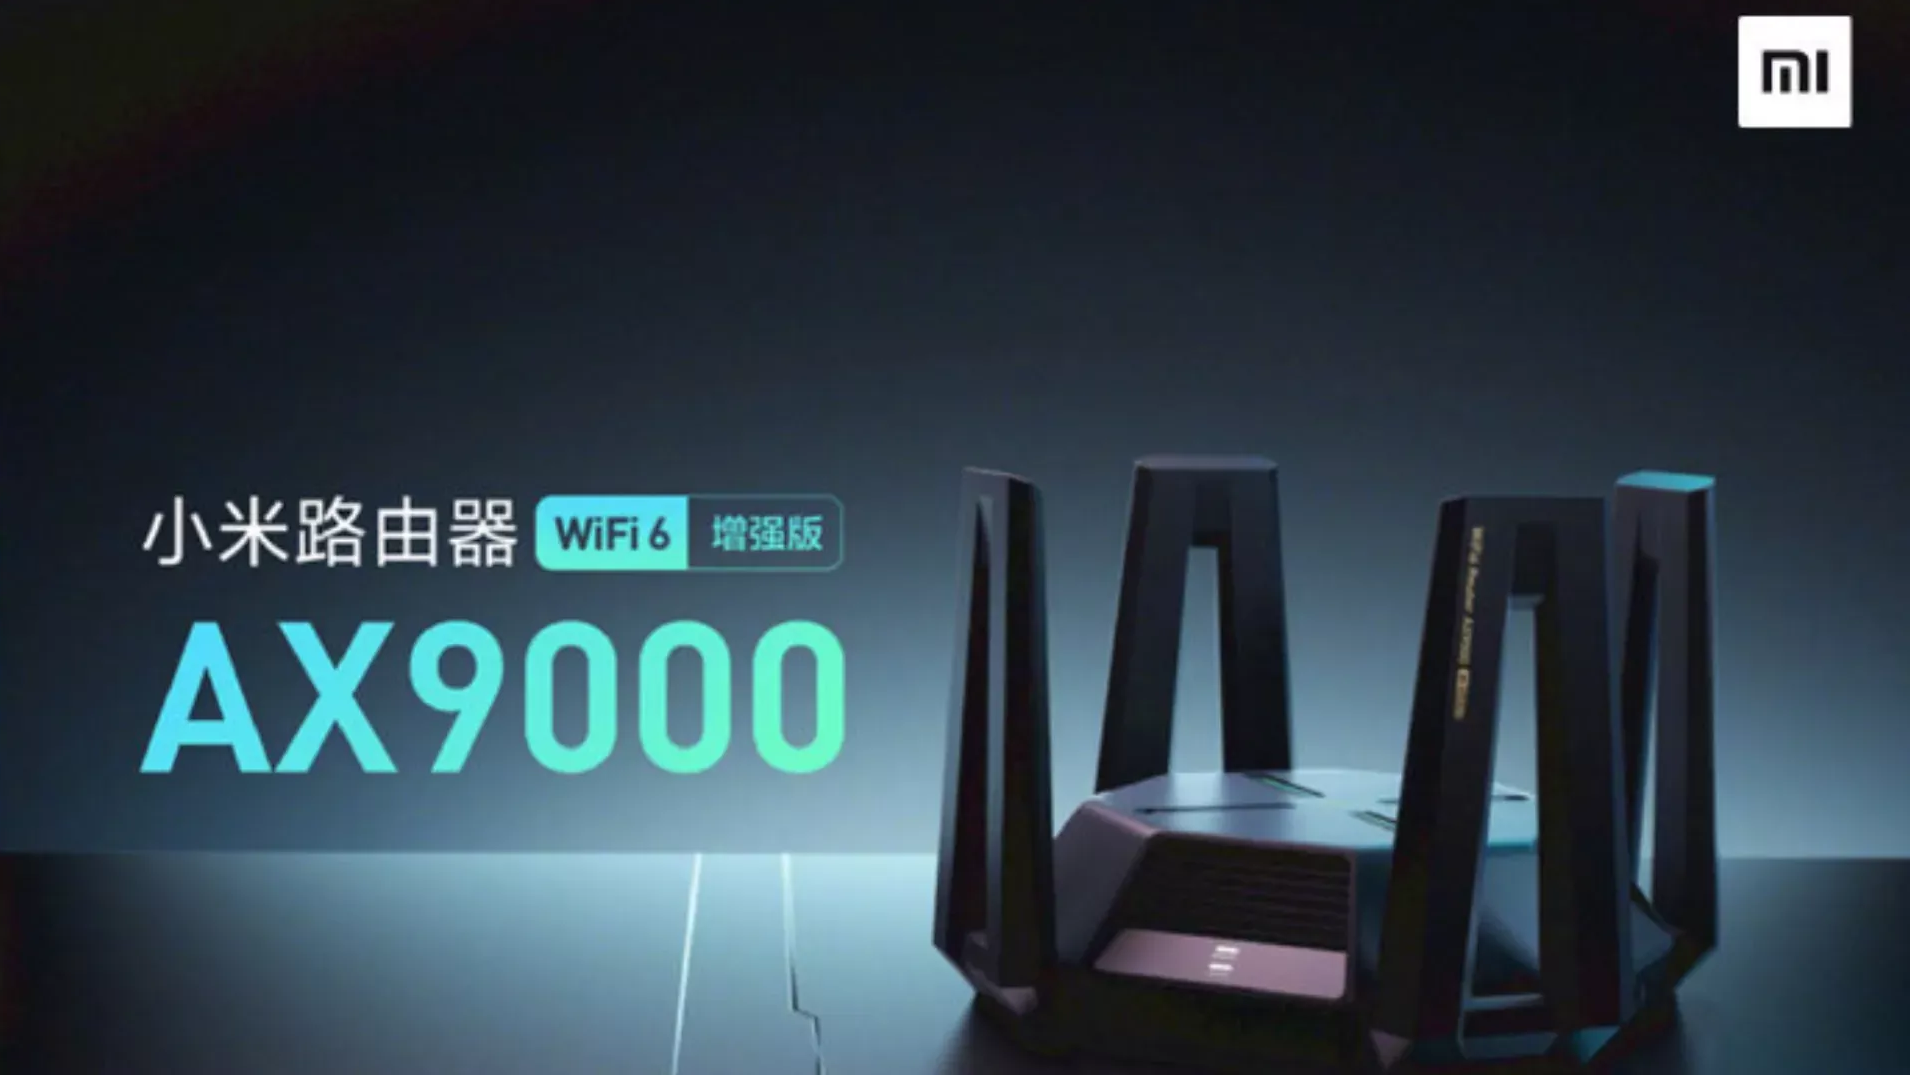 Xiaomi lança roteador gamer AX9000 com Wi-Fi 6